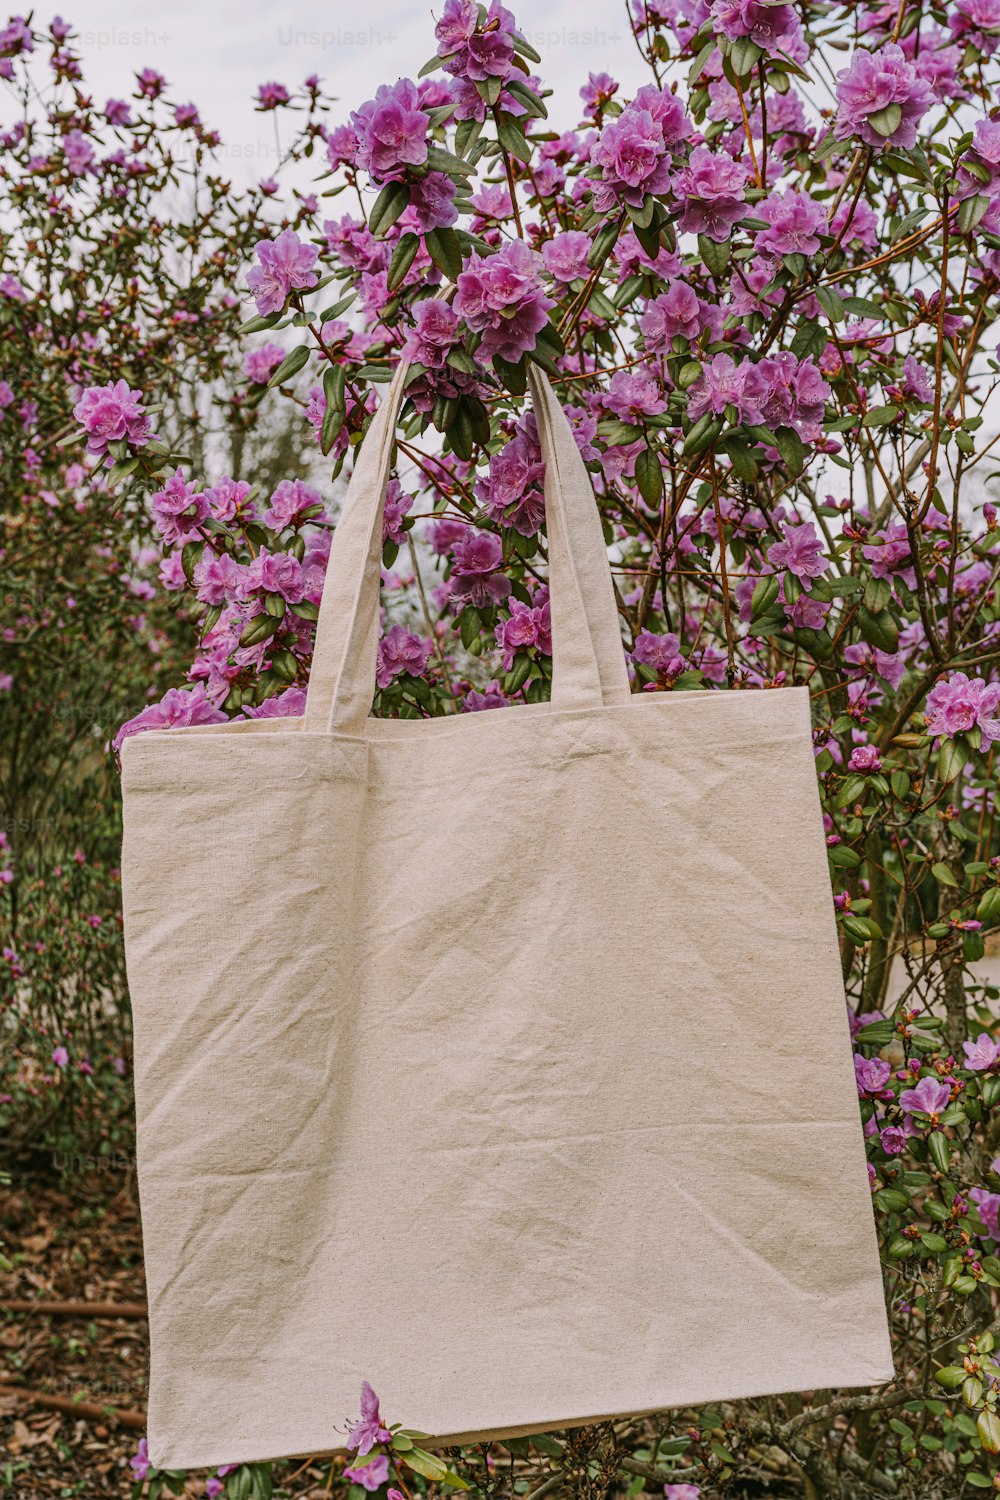 Una borsa bianca appesa a un albero pieno di fiori viola